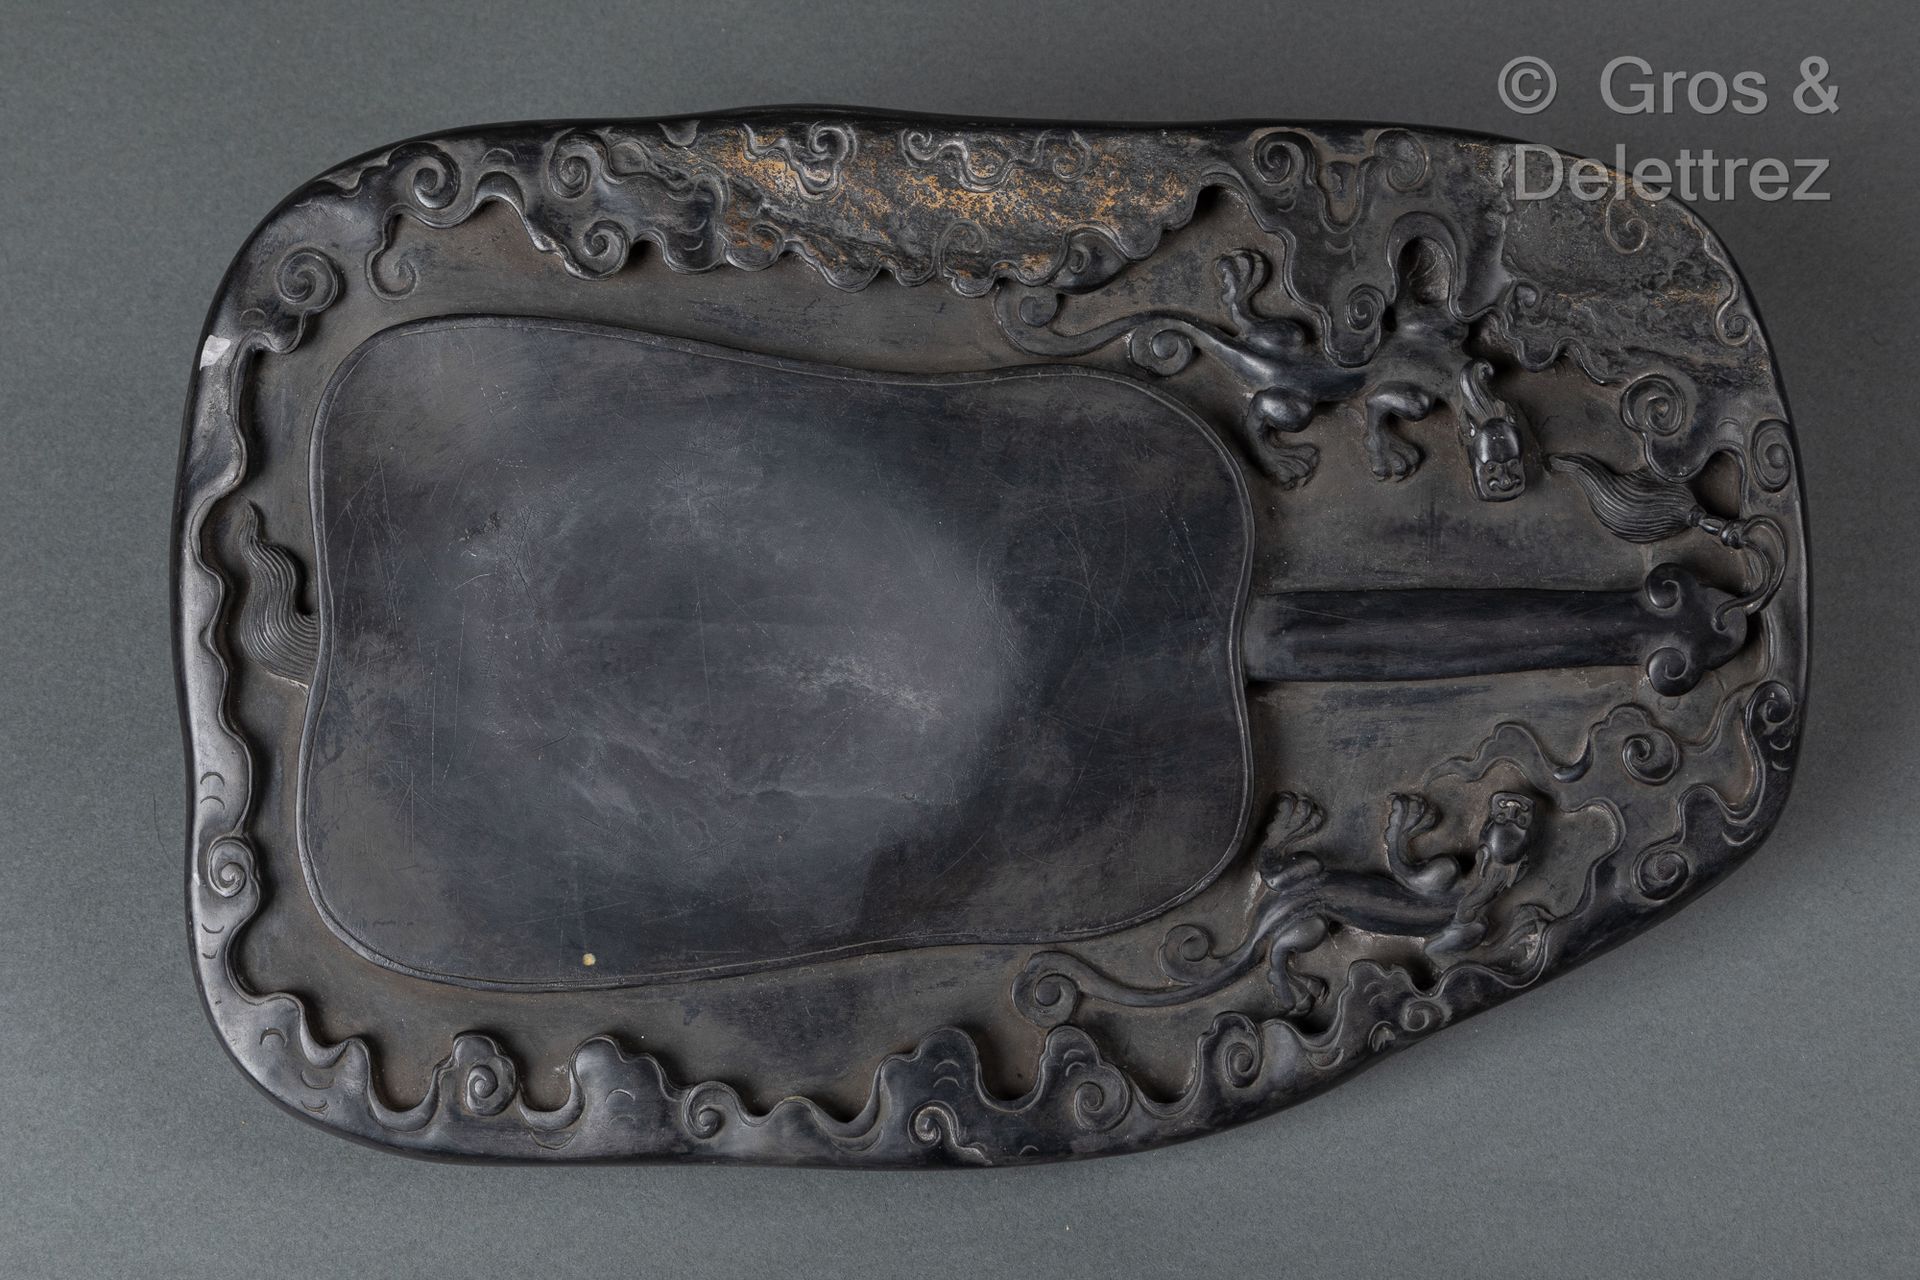 Null 中国，清朝时期
一块大的黑色硬石砚，雕刻着一把扇子，周围有两个造型的祁隆和云朵。背面有铭文。署名 "赵有恭"。 
H.34.2厘米 
(缺口，划痕)